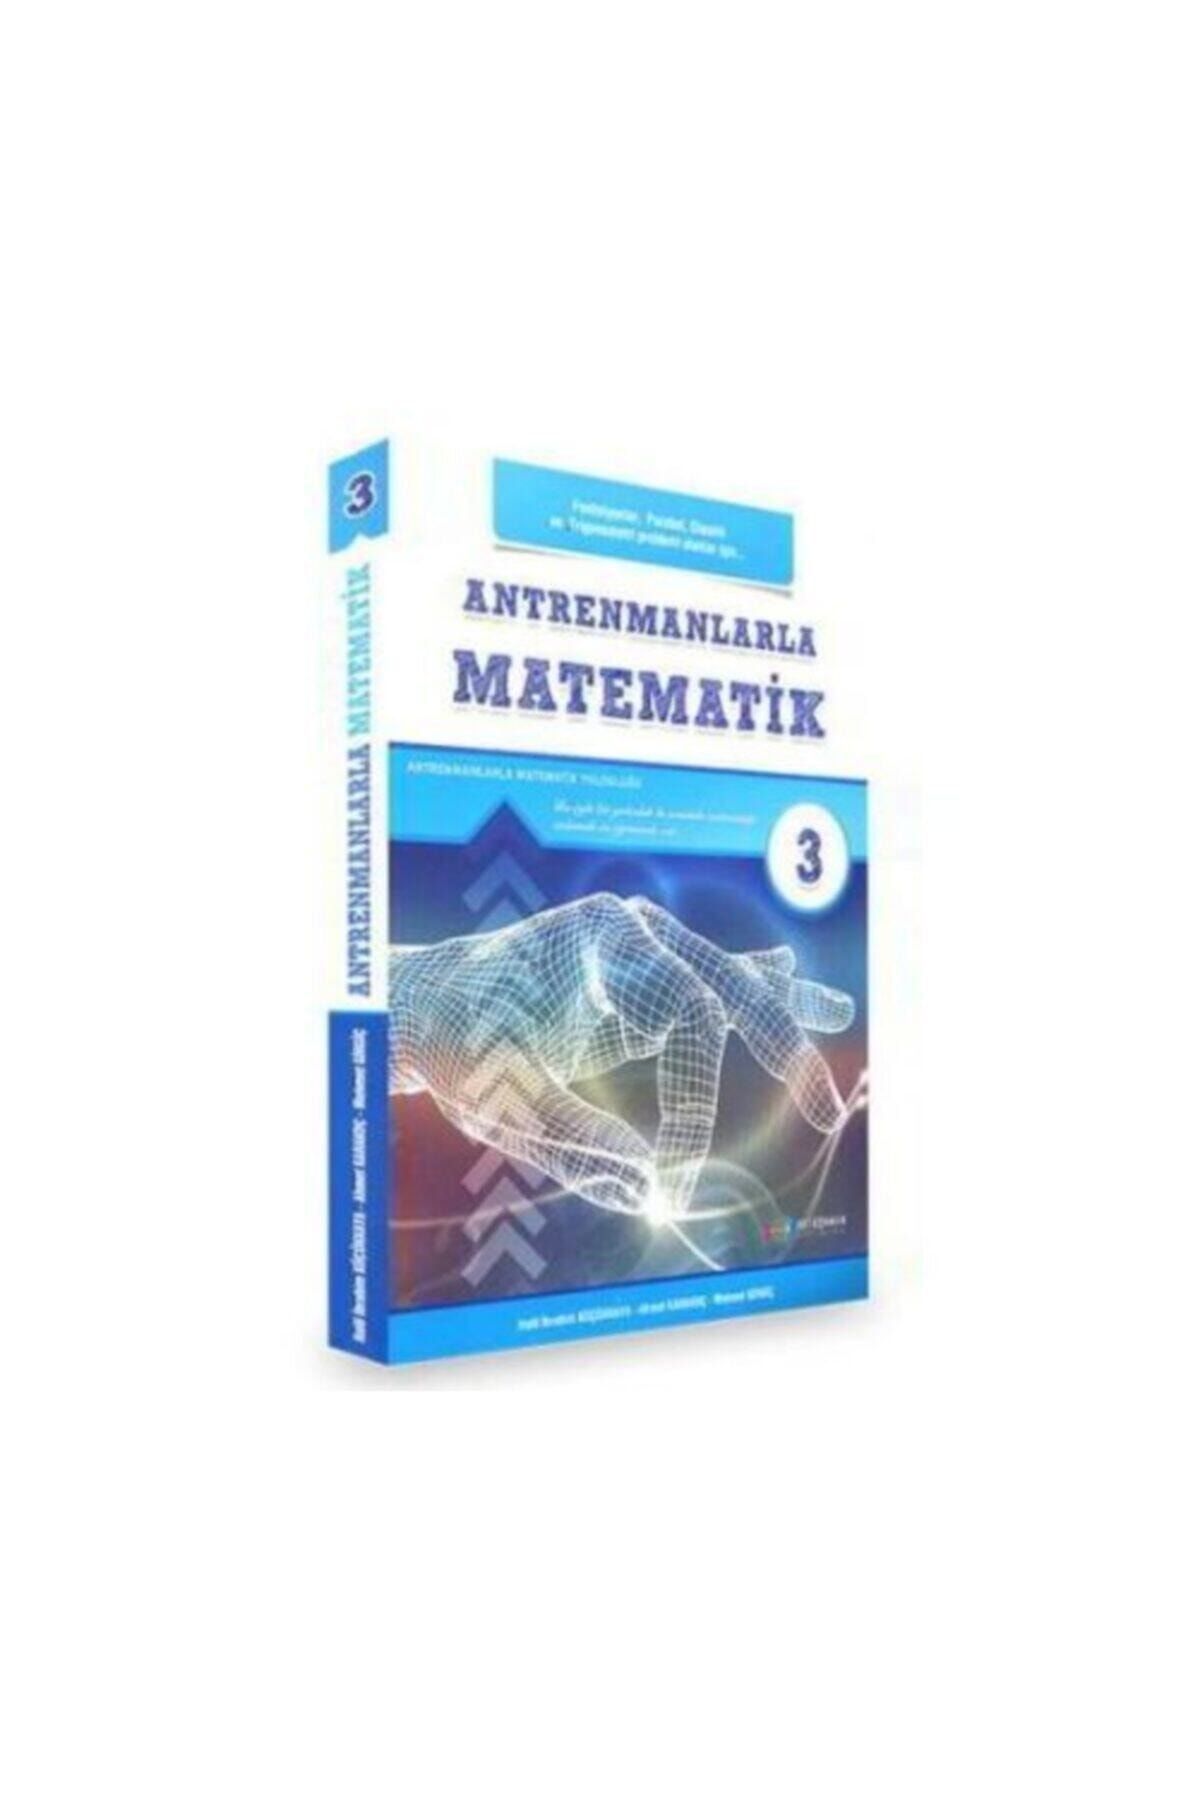 Antrenman Yayınları Antrenmanlarla Matematik 3.üçüncü Kitap